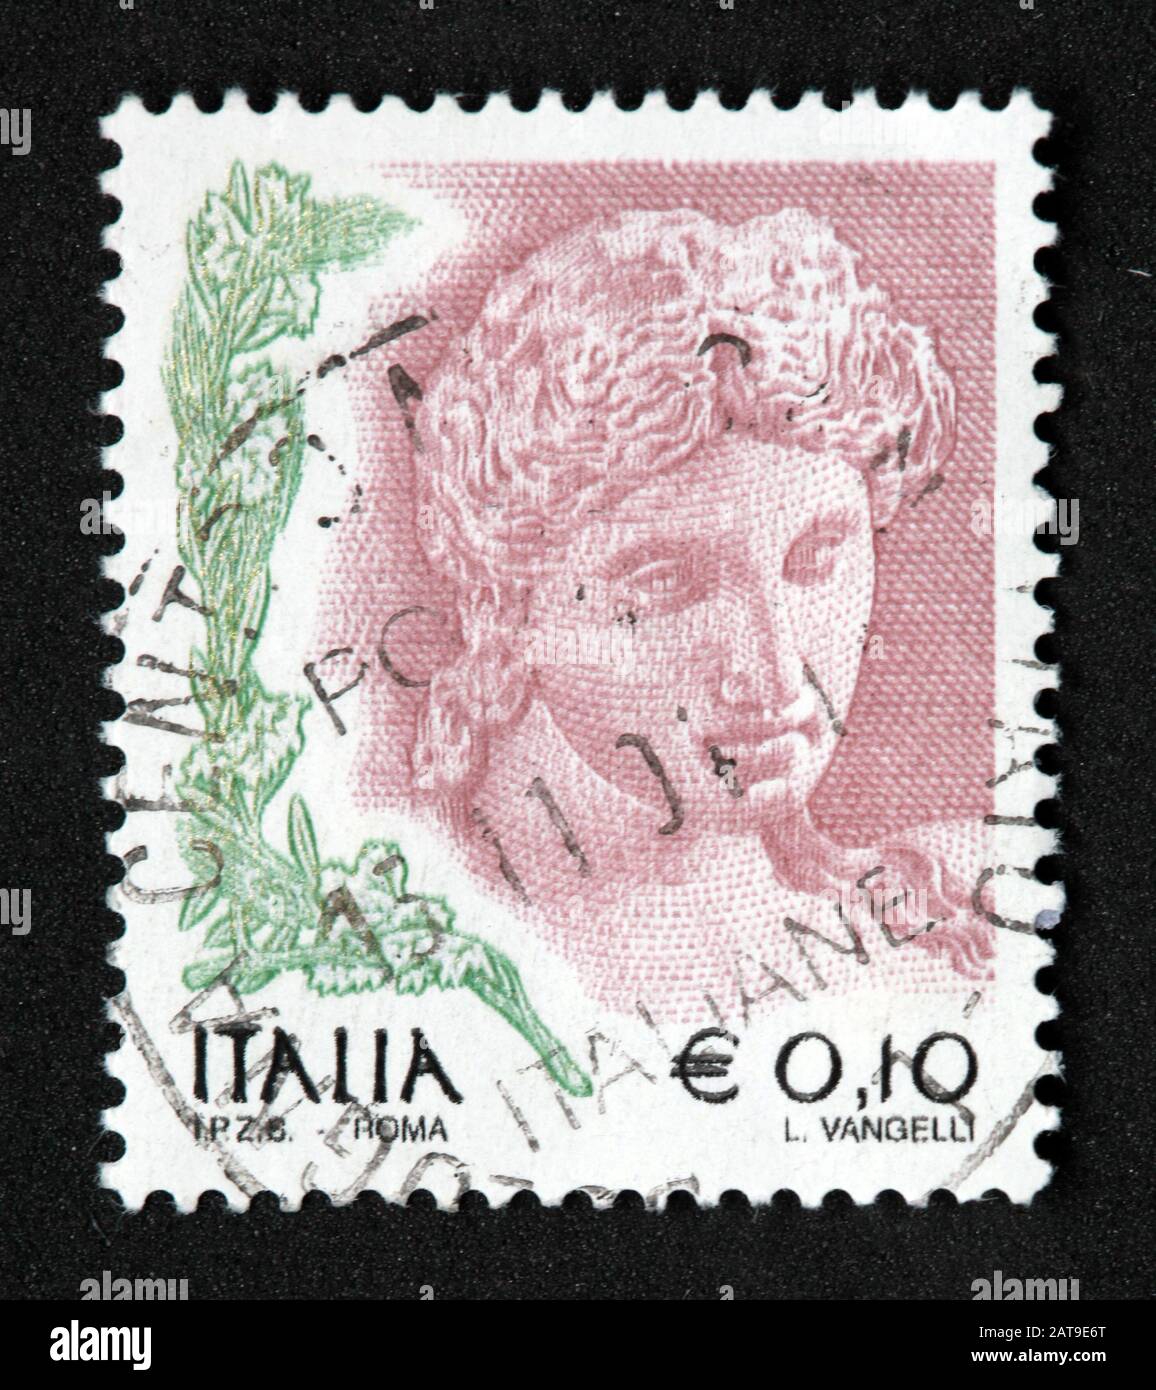 Francobollo italiano, usato da poste Italia e franco, italia E0.10 L Vangelli Foto Stock